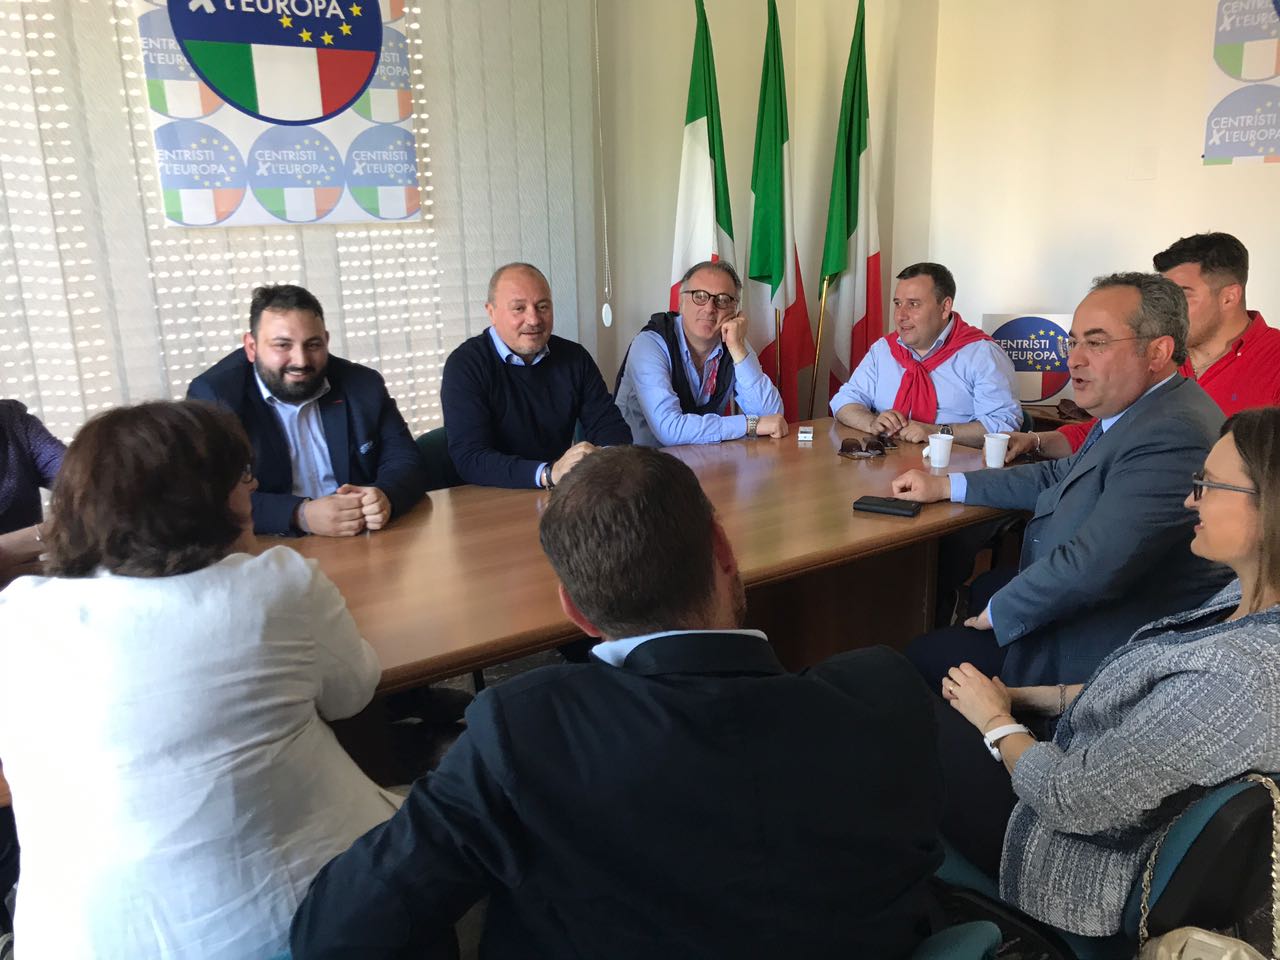 Benevento| AP-Centristi Europa, prosegue percorso politico sinergico